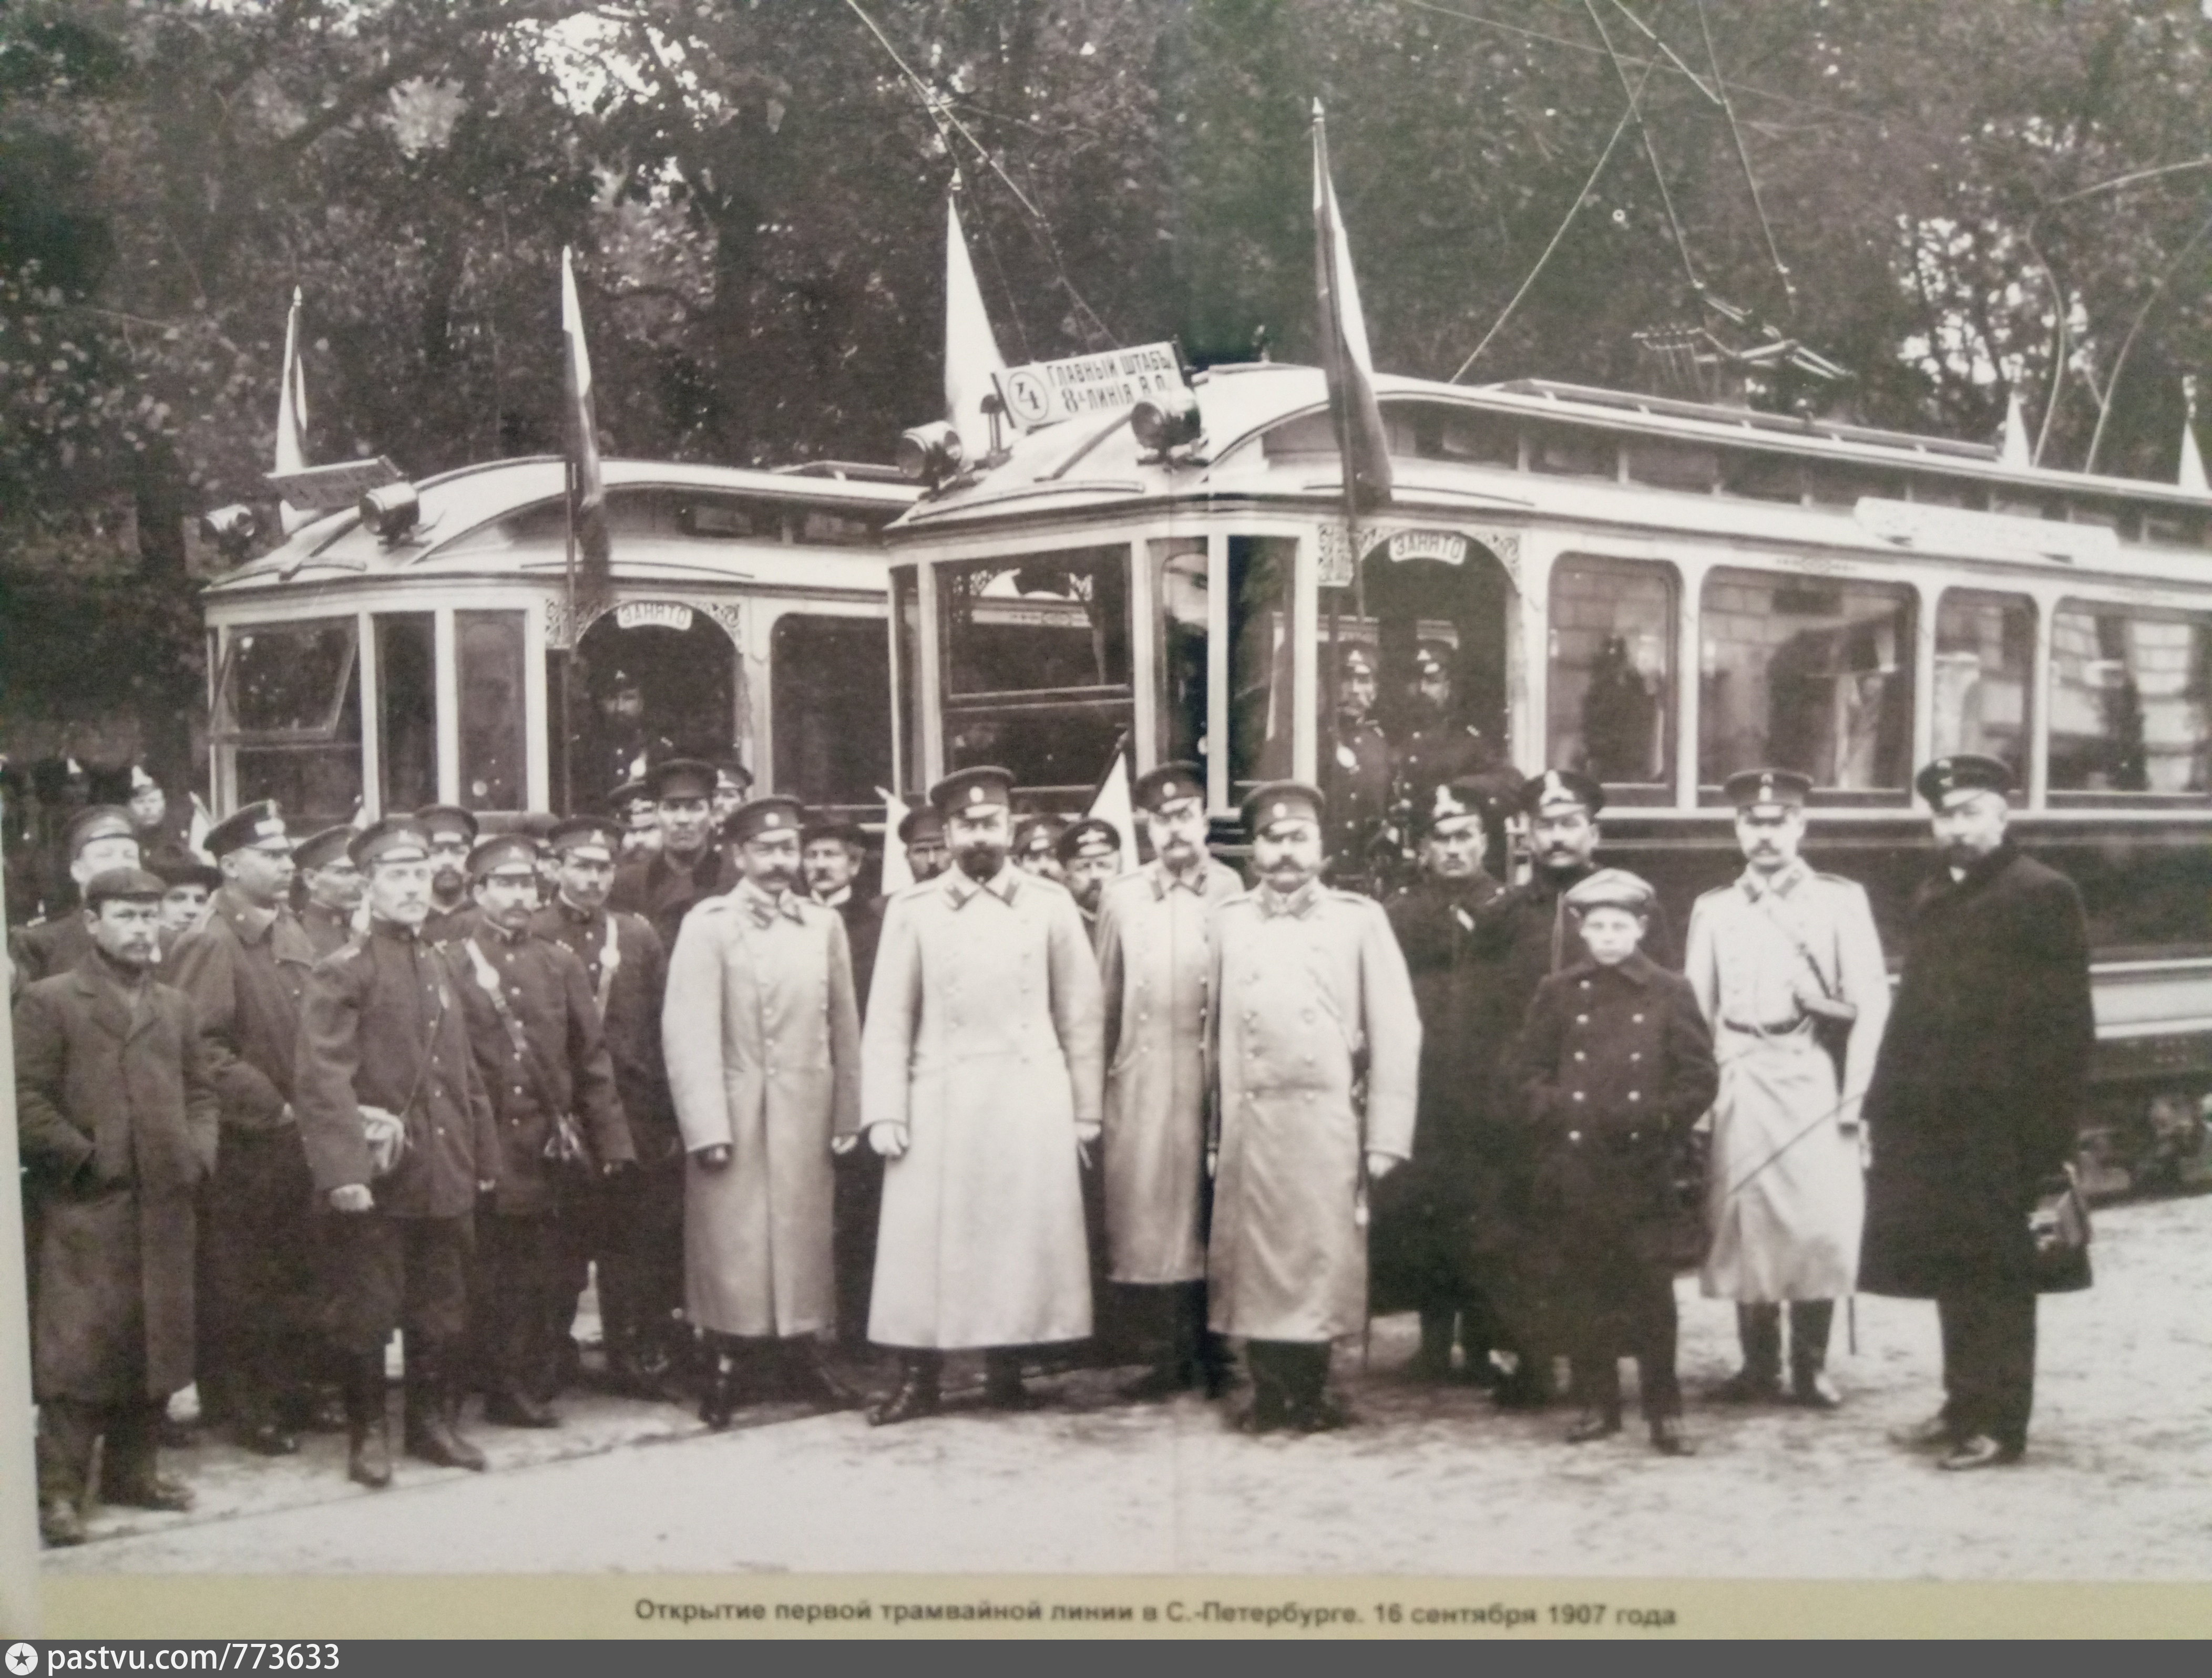 Первый трамвай 2. 29 Сентября 1907 открытие трамвайного движения в Петербурге. Первый трамвай в Санкт-Петербурге 1907. Открытие трамвайного движения в Санкт-Петербурге в 1907 году. Трамваи 1907 год Петербург.